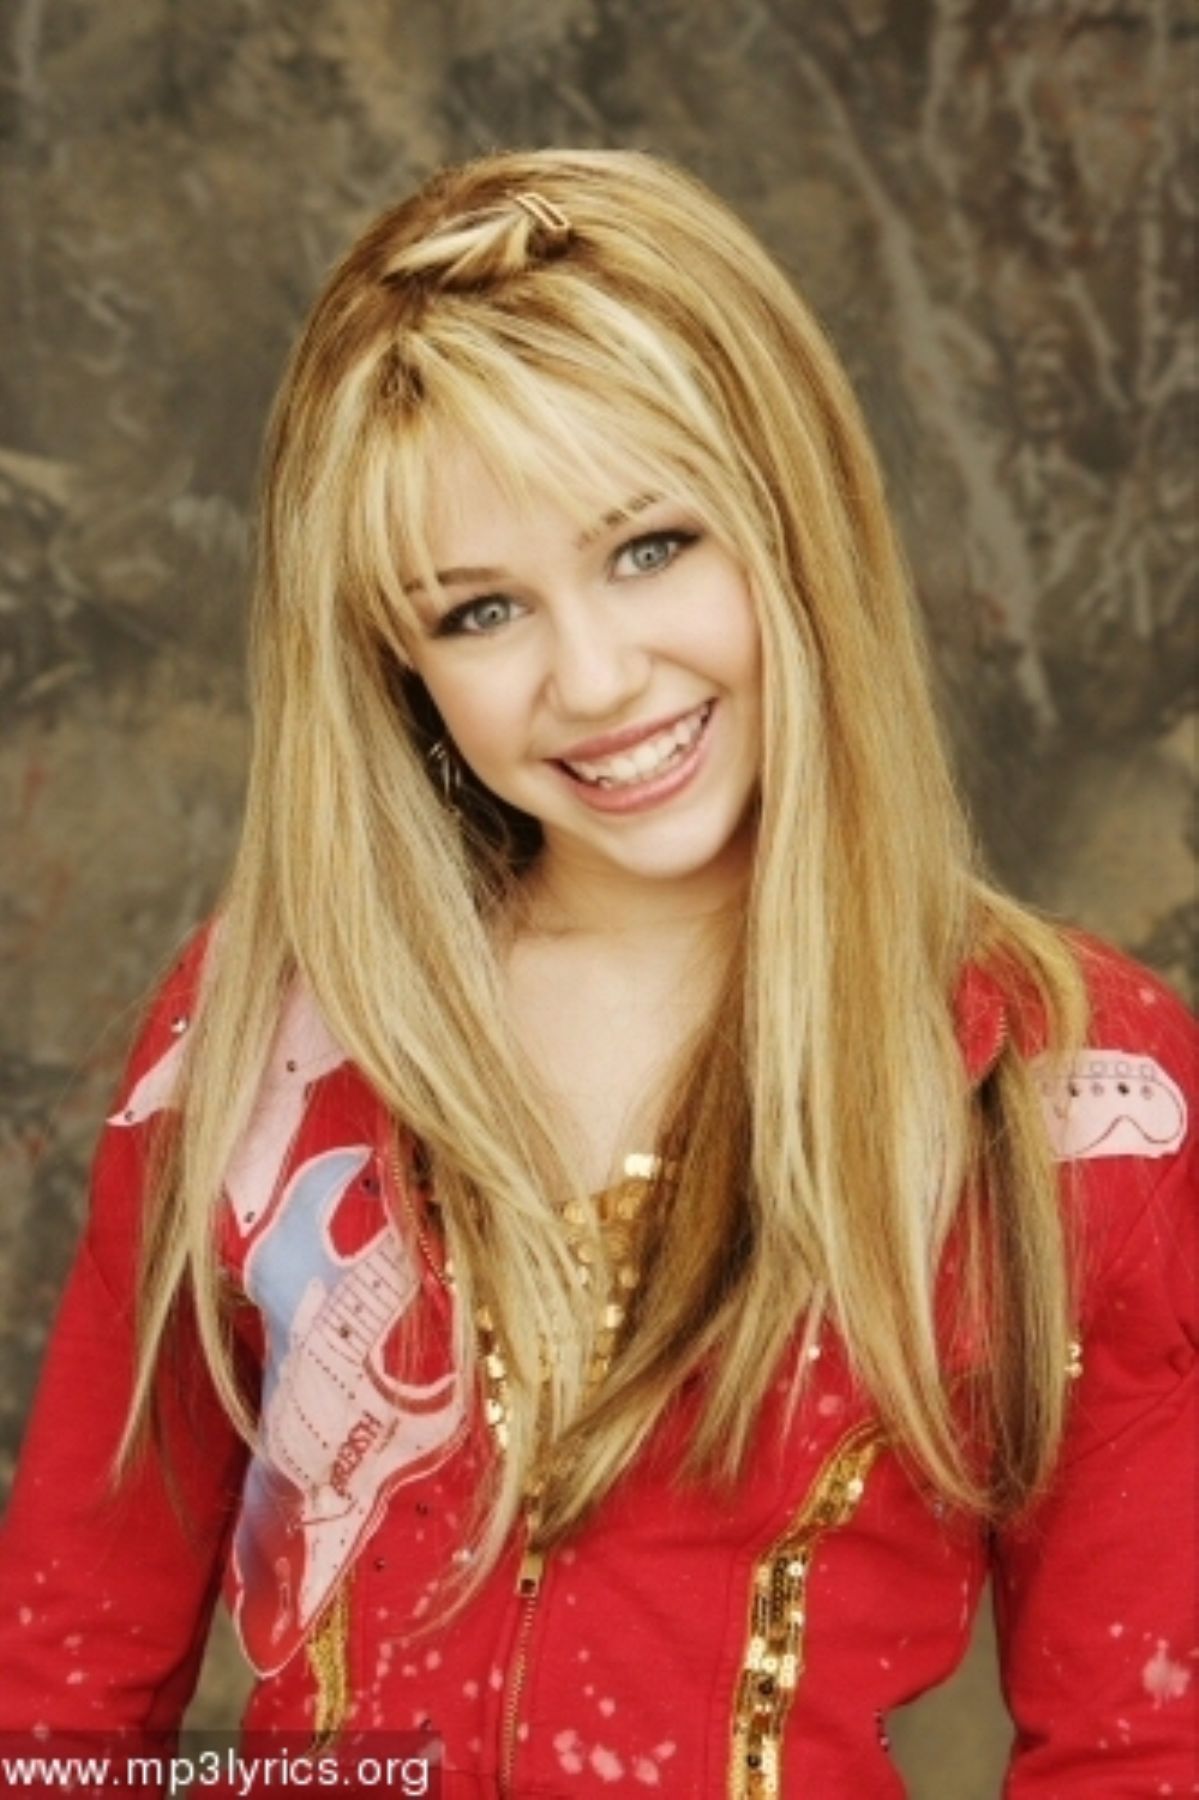 Miley Cyrus Cumplirá 18 Años Y Ya Ha Ganado 1000 Millones De Dólares News Andina Peru 6941